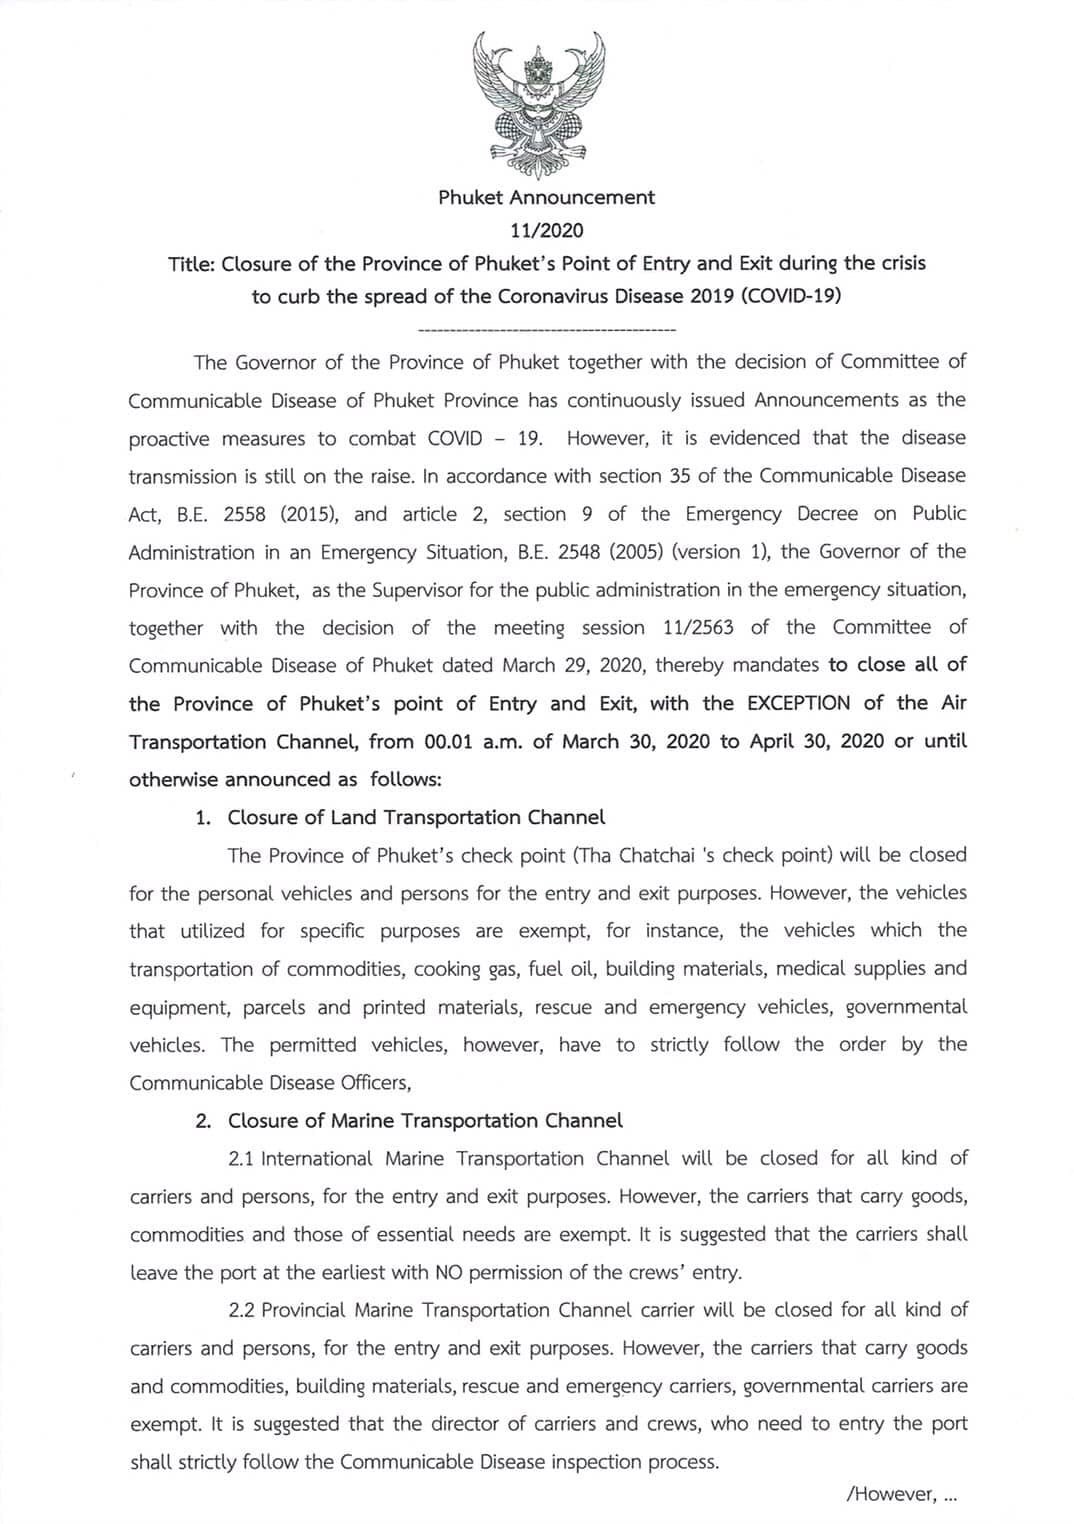 Lettre du gouverneur annonçant la fermeture de Phuket - DR